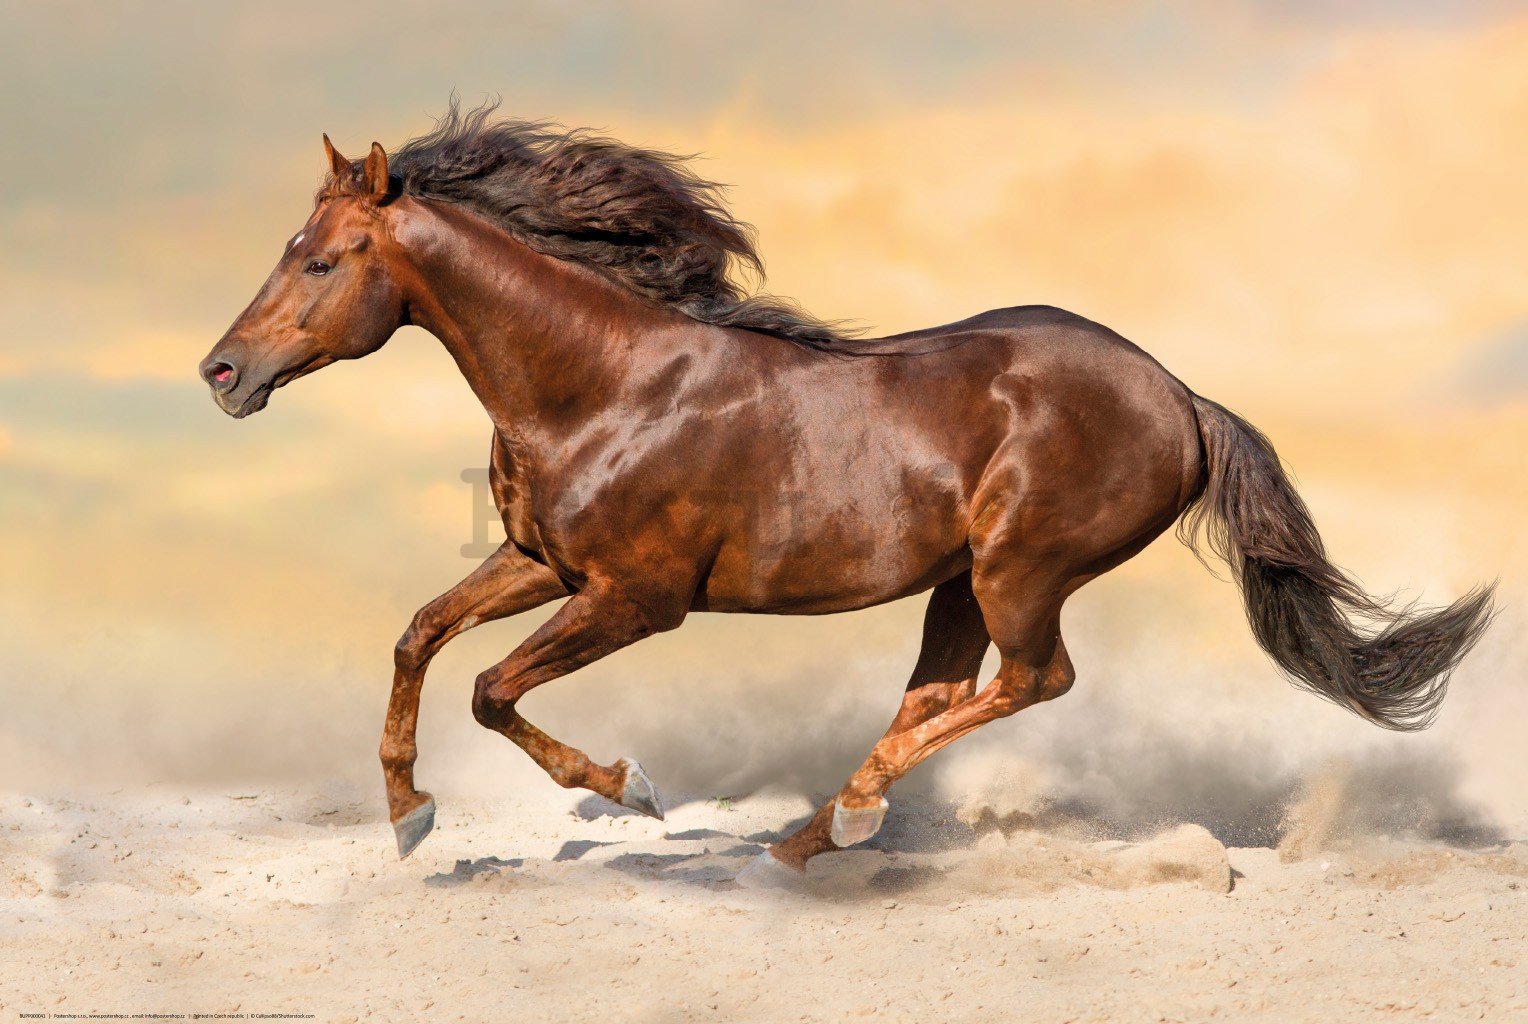 Poster: Cavallo al galoppo (2)